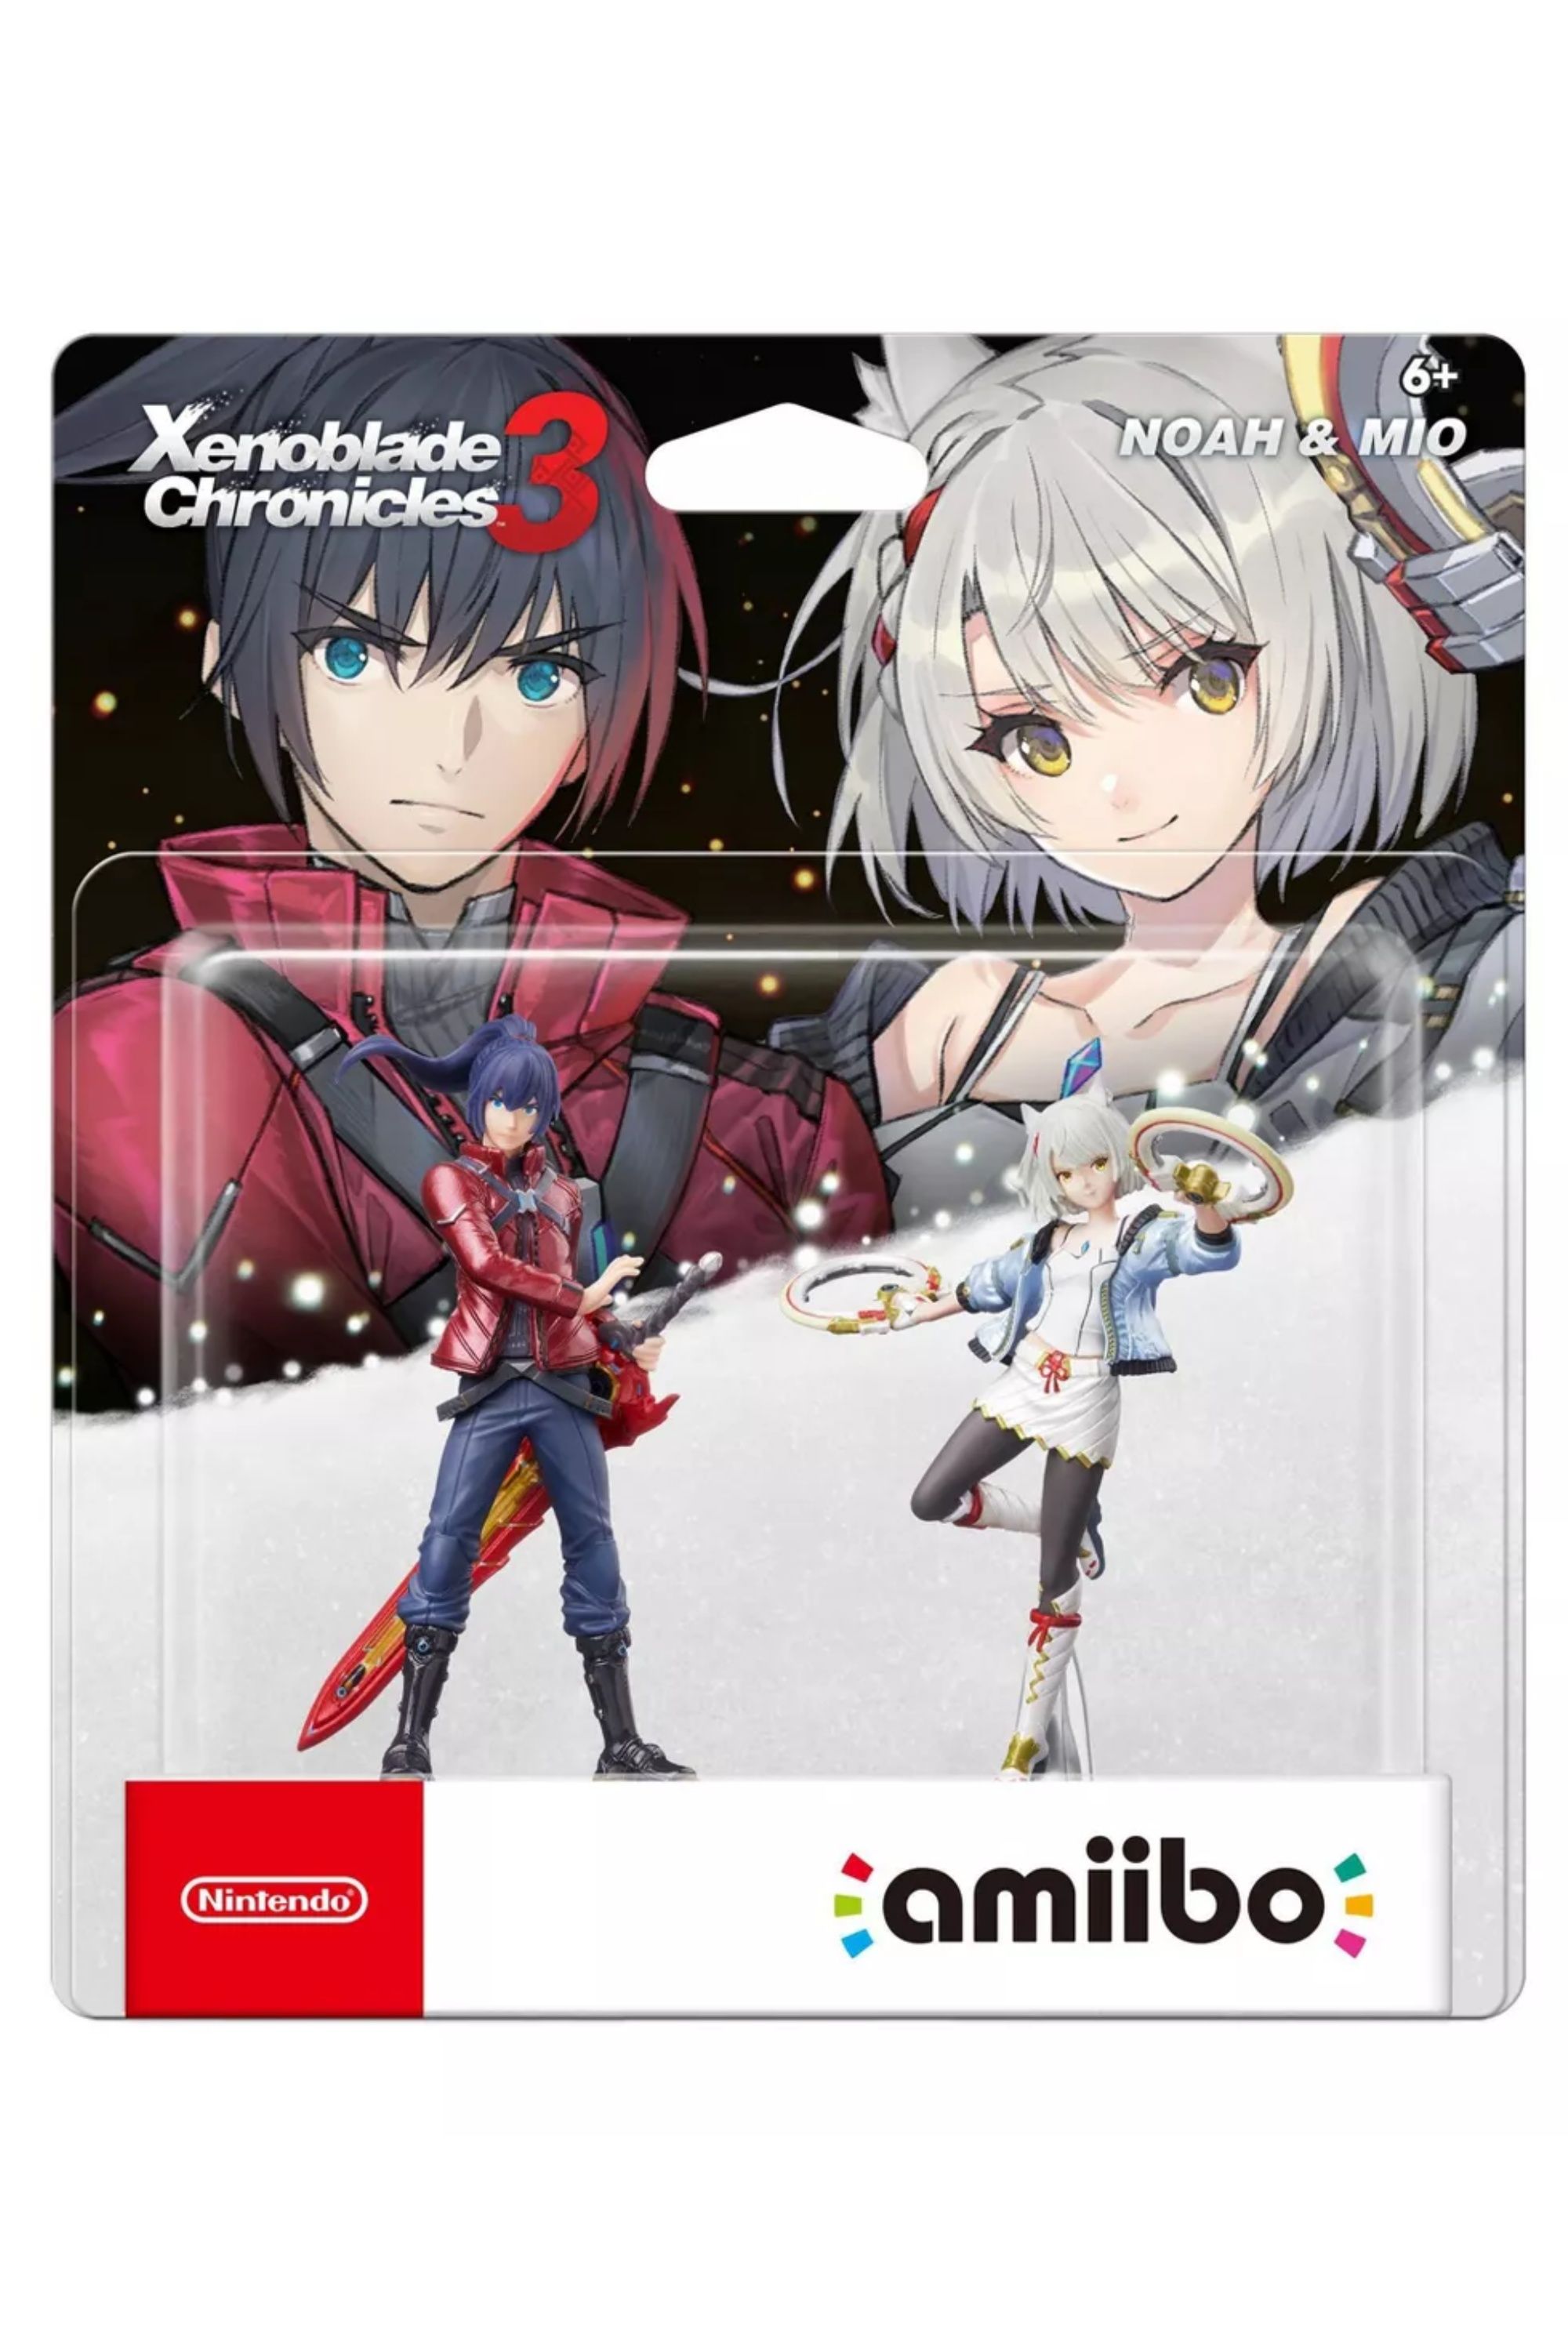 Sora's Smash Ultimate Amiibo Revealed During Nintendo Direct